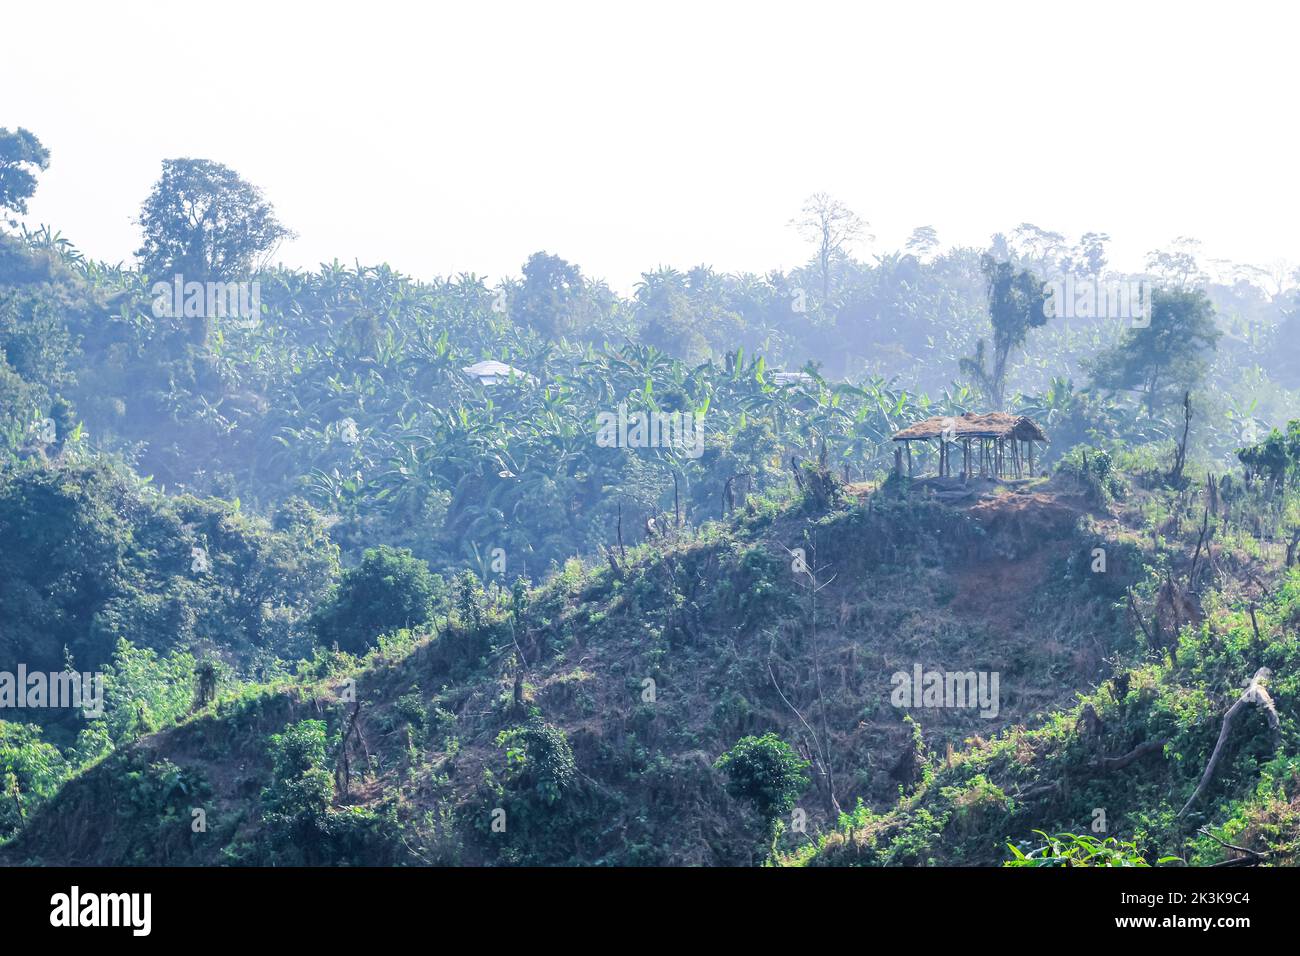 Entwaldung Umweltproblem, Regenwälder werden für Ölpalmenplantagen zerstört. Berge Lichtung Bäume schneiden einen Wald. Stockfoto